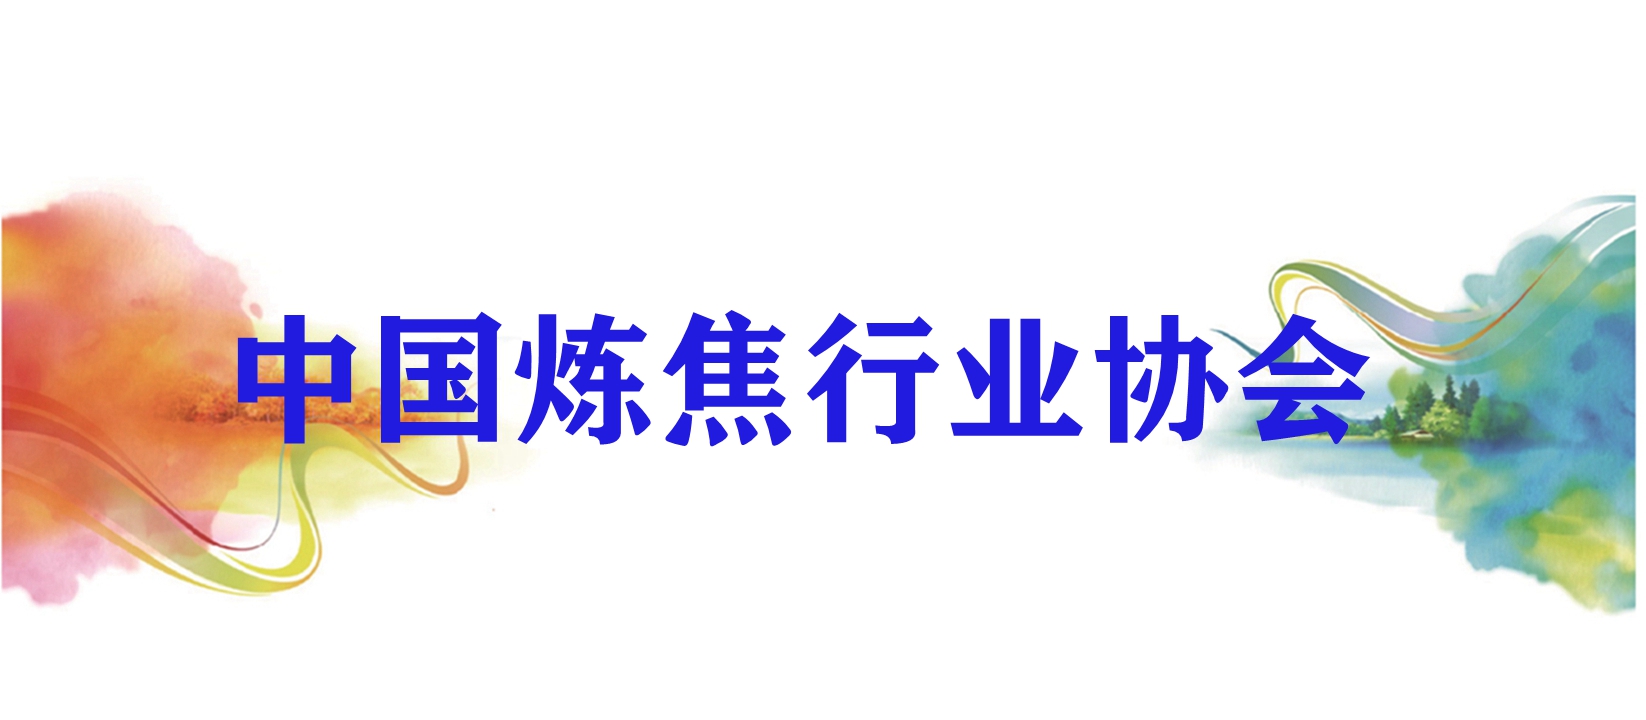 中国炼焦行业协会